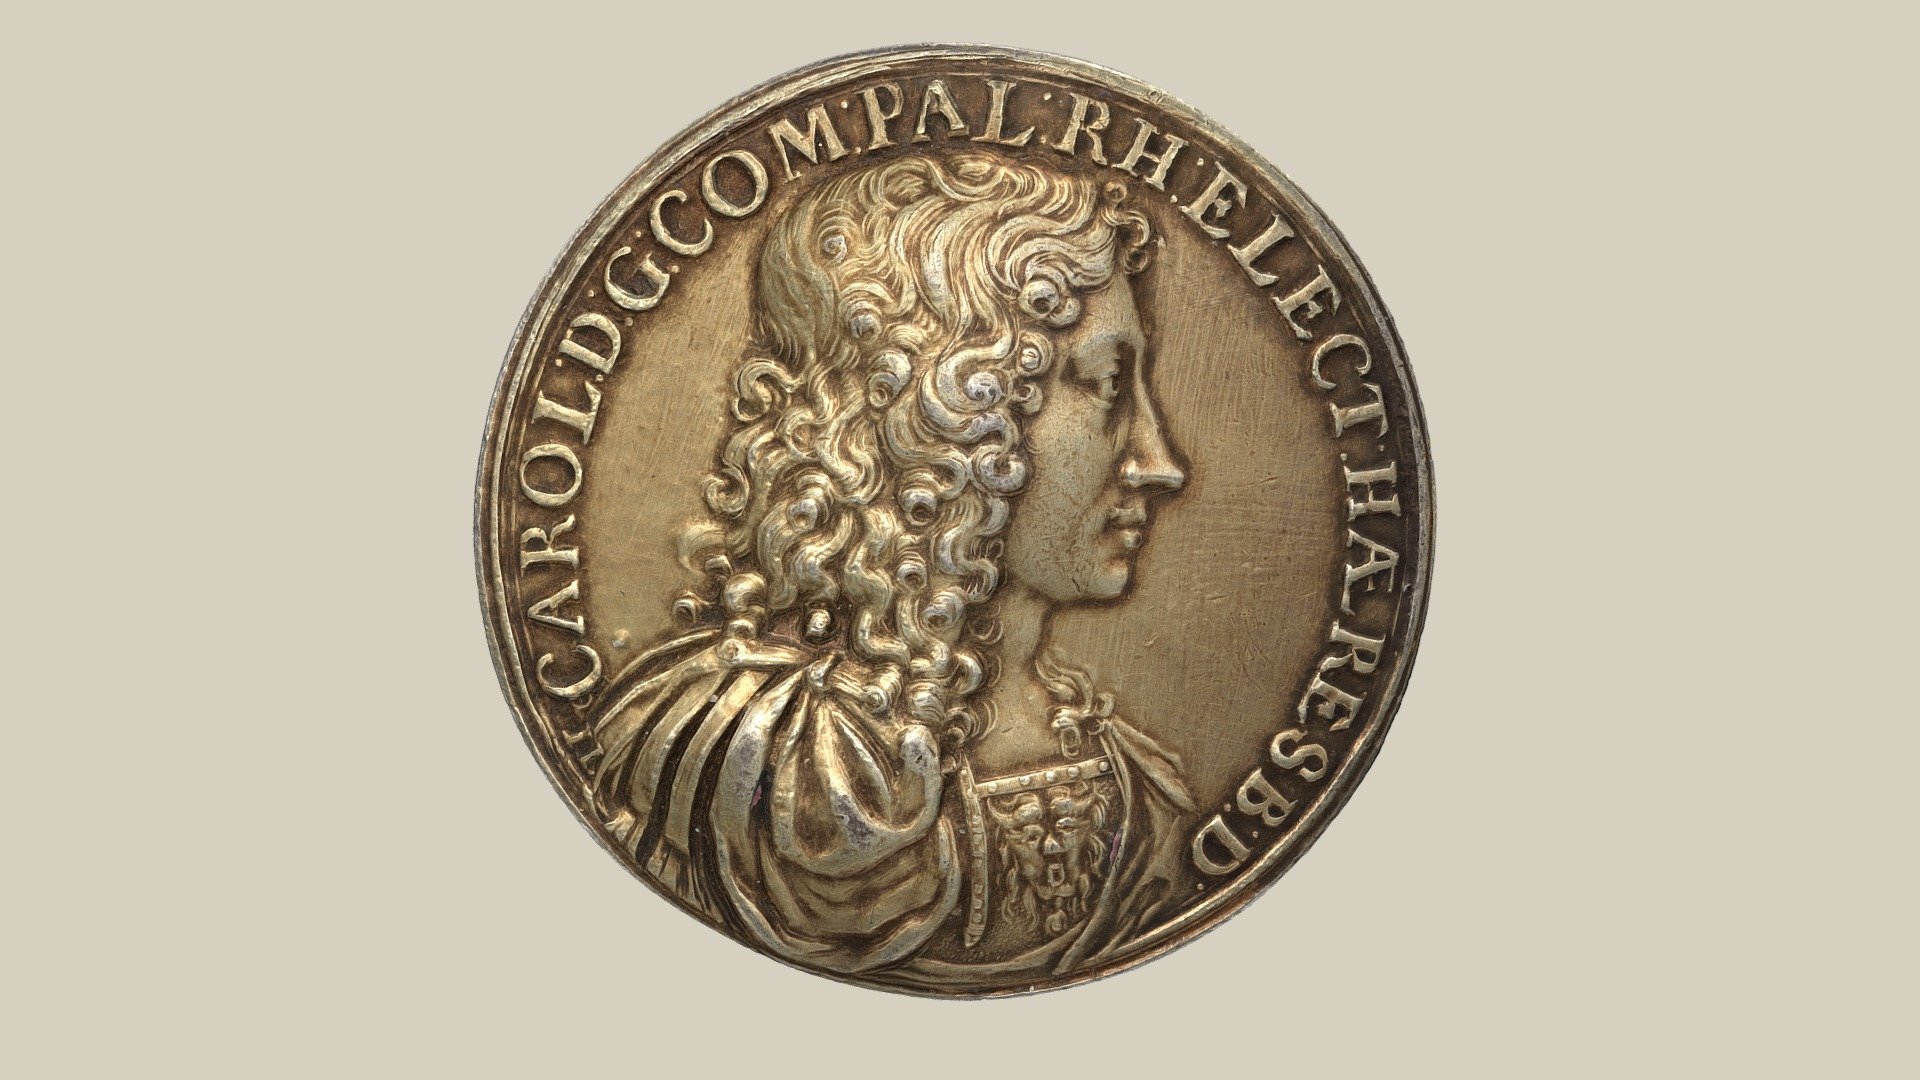 Medal of Charles II, Elector Palatine from the year 1677 by Johann Linck. Obverse: CAROL DG COM PAL RHE ELECTHAE RES BD, a harnessed bust of the Elector with a gorgoneion on his chest. Reverse: SUSTENTAT, fountain with a globe on the tips of the water jets. Silver, gilt; dm 46.2 mm; 40.4 g.

Charles II (1651-1685) from the Palatine line of the Wittelsbach family was Count Palatine and Elector Palatine from 1680 until his death.

Medaille des Karl (II.) aus dem Jahr 1677 von Johann Linck. Vorderseite: CAROL DG COM PAL RHE ELECTHAE RES BD, geharnischtes Brustbild des Kurfürsten mit einem Gorgoneion auf der Brust. Rückseite: SUSTENTAT, Springbrunnen mit einer Kugel auf den Spitzen der Wasserstrahlen. Silber, vergoldet; Dm 46,2 mm; 40,4 g.

Karl II. von der Pfalz (1651-1685) aus der pfälzischen Linie der Familie der Wittelsbacher war Pfalzgraf und Kurfürst von der Pfalz von 1680 bis zu seinem Tod 3d model